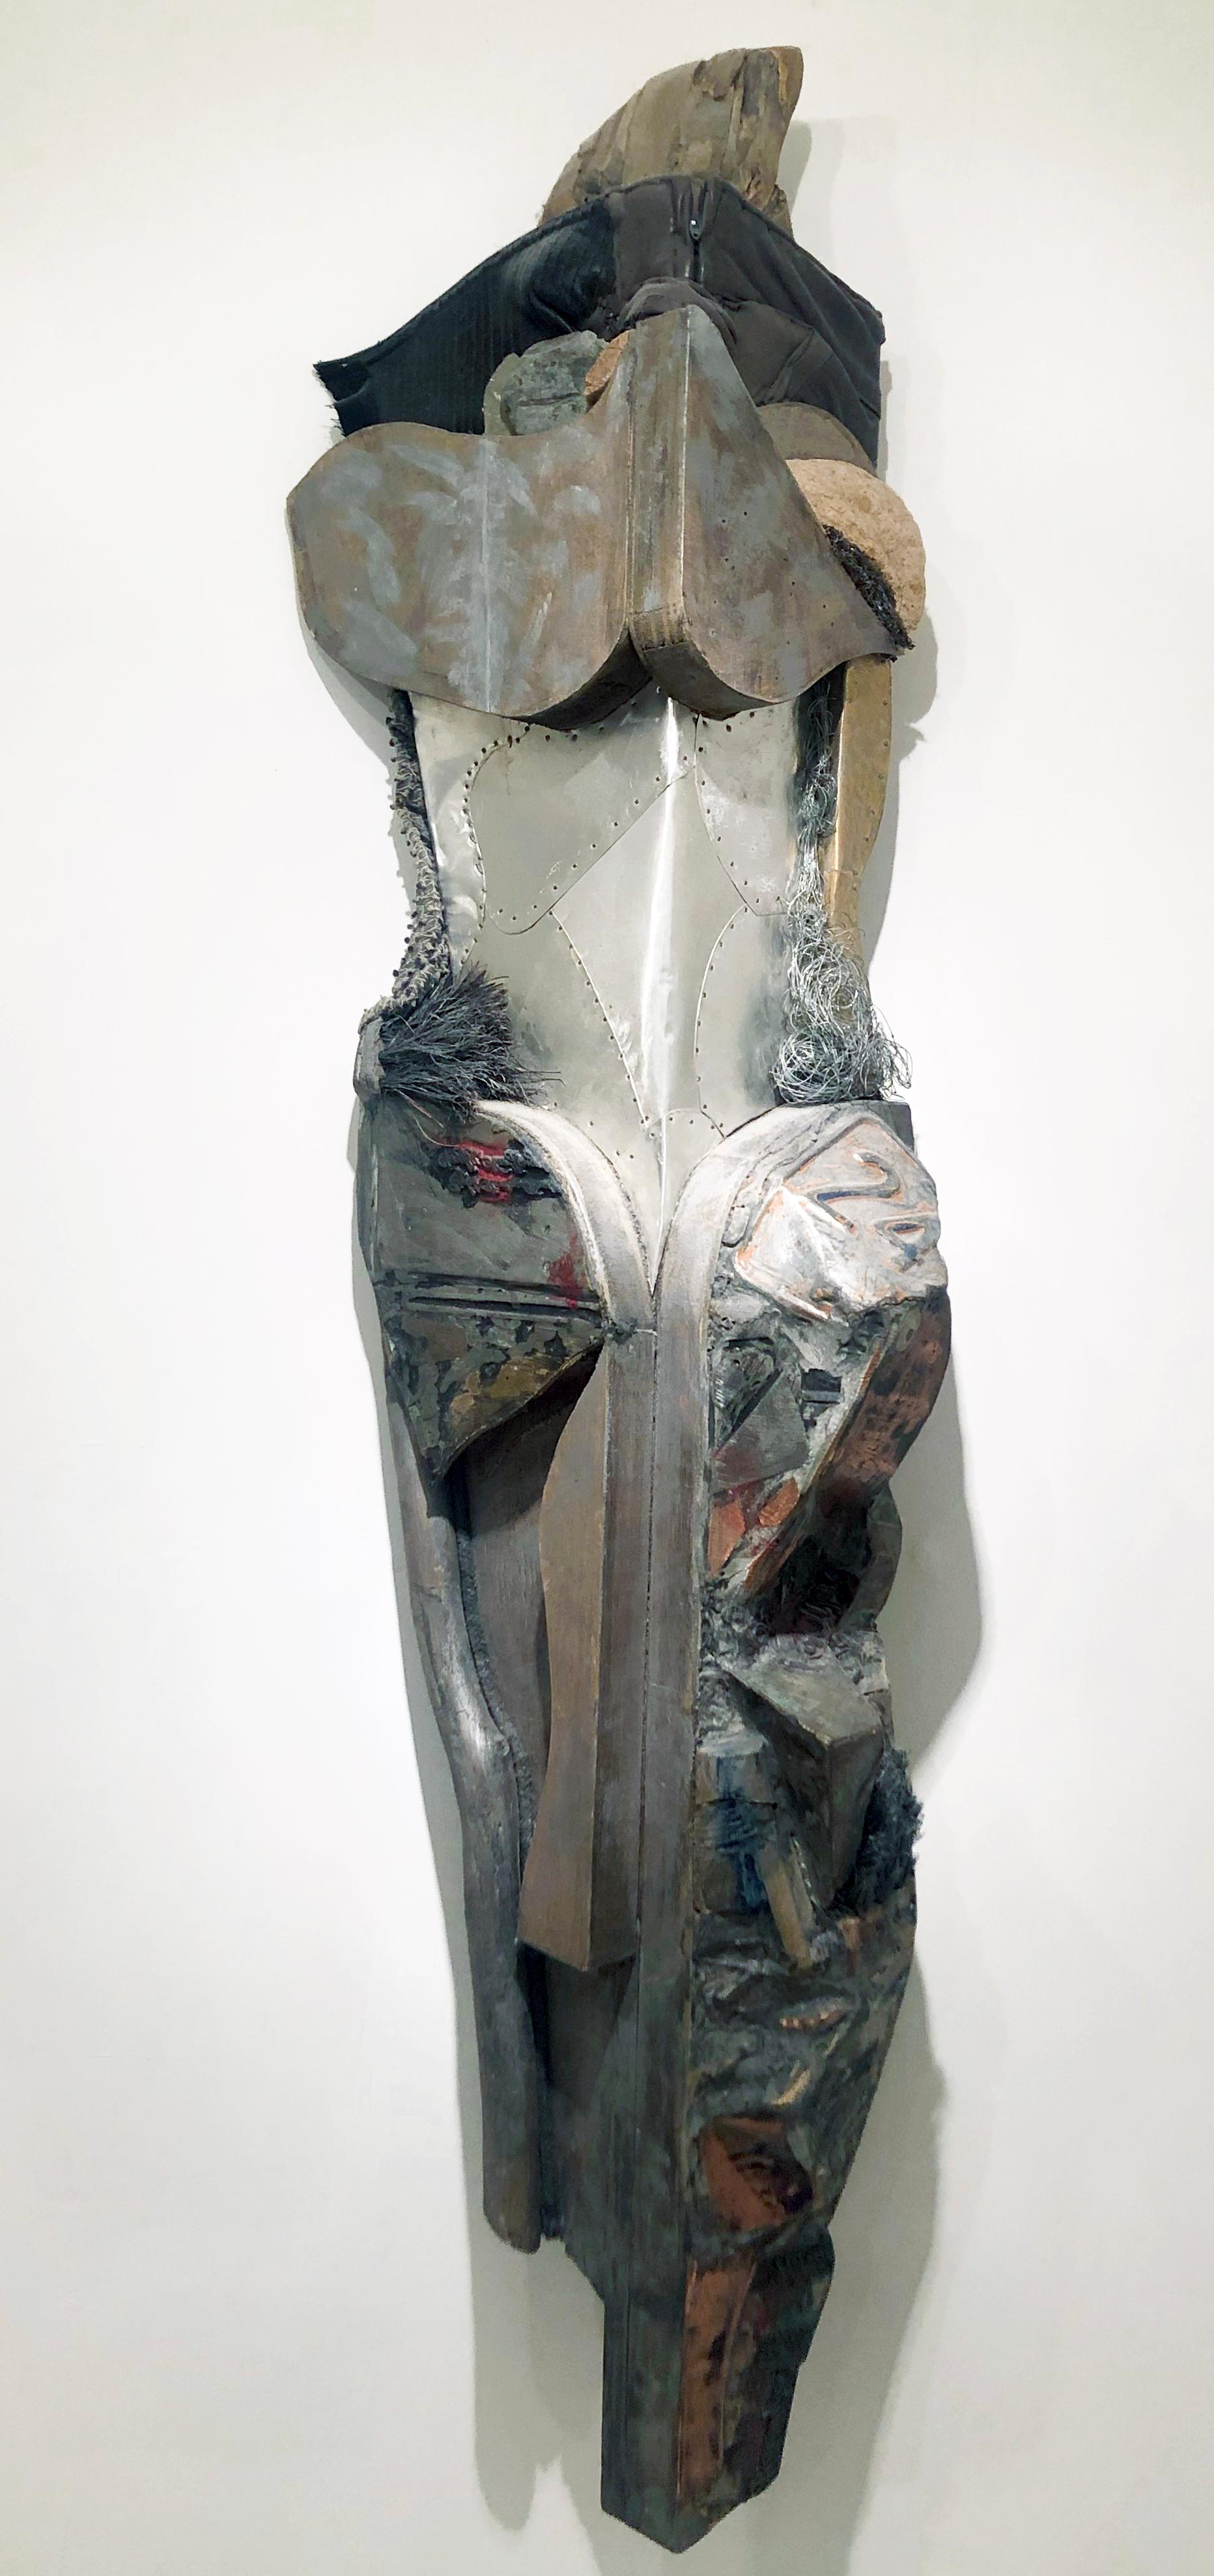 Amerikanische Contemporary Mixed Media Skulptur von Linda Stein - Quiet Strength 472